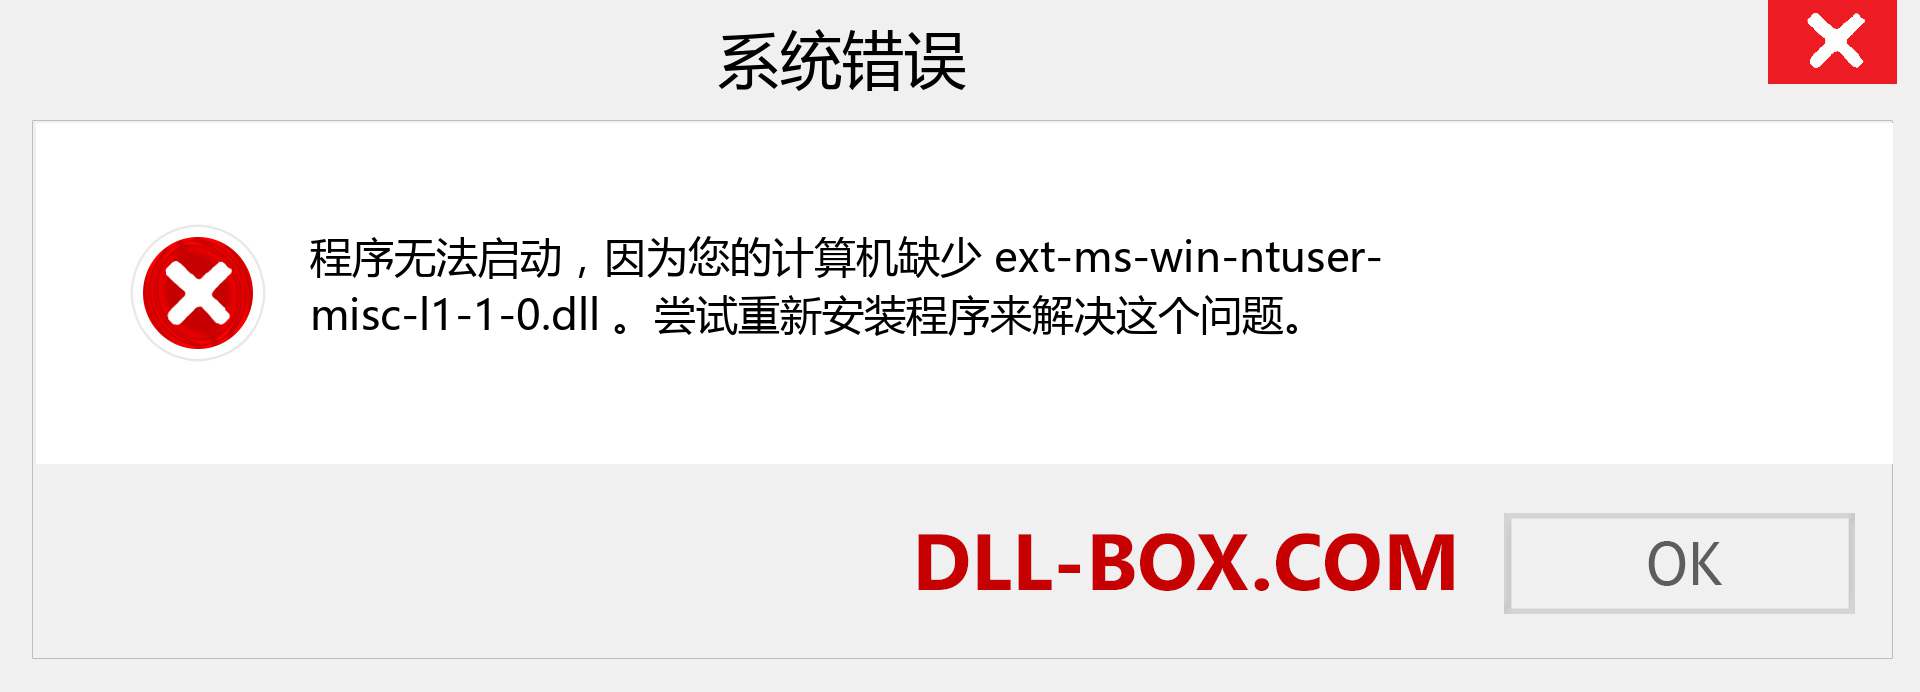 ext-ms-win-ntuser-misc-l1-1-0.dll 文件丢失？。 适用于 Windows 7、8、10 的下载 - 修复 Windows、照片、图像上的 ext-ms-win-ntuser-misc-l1-1-0 dll 丢失错误